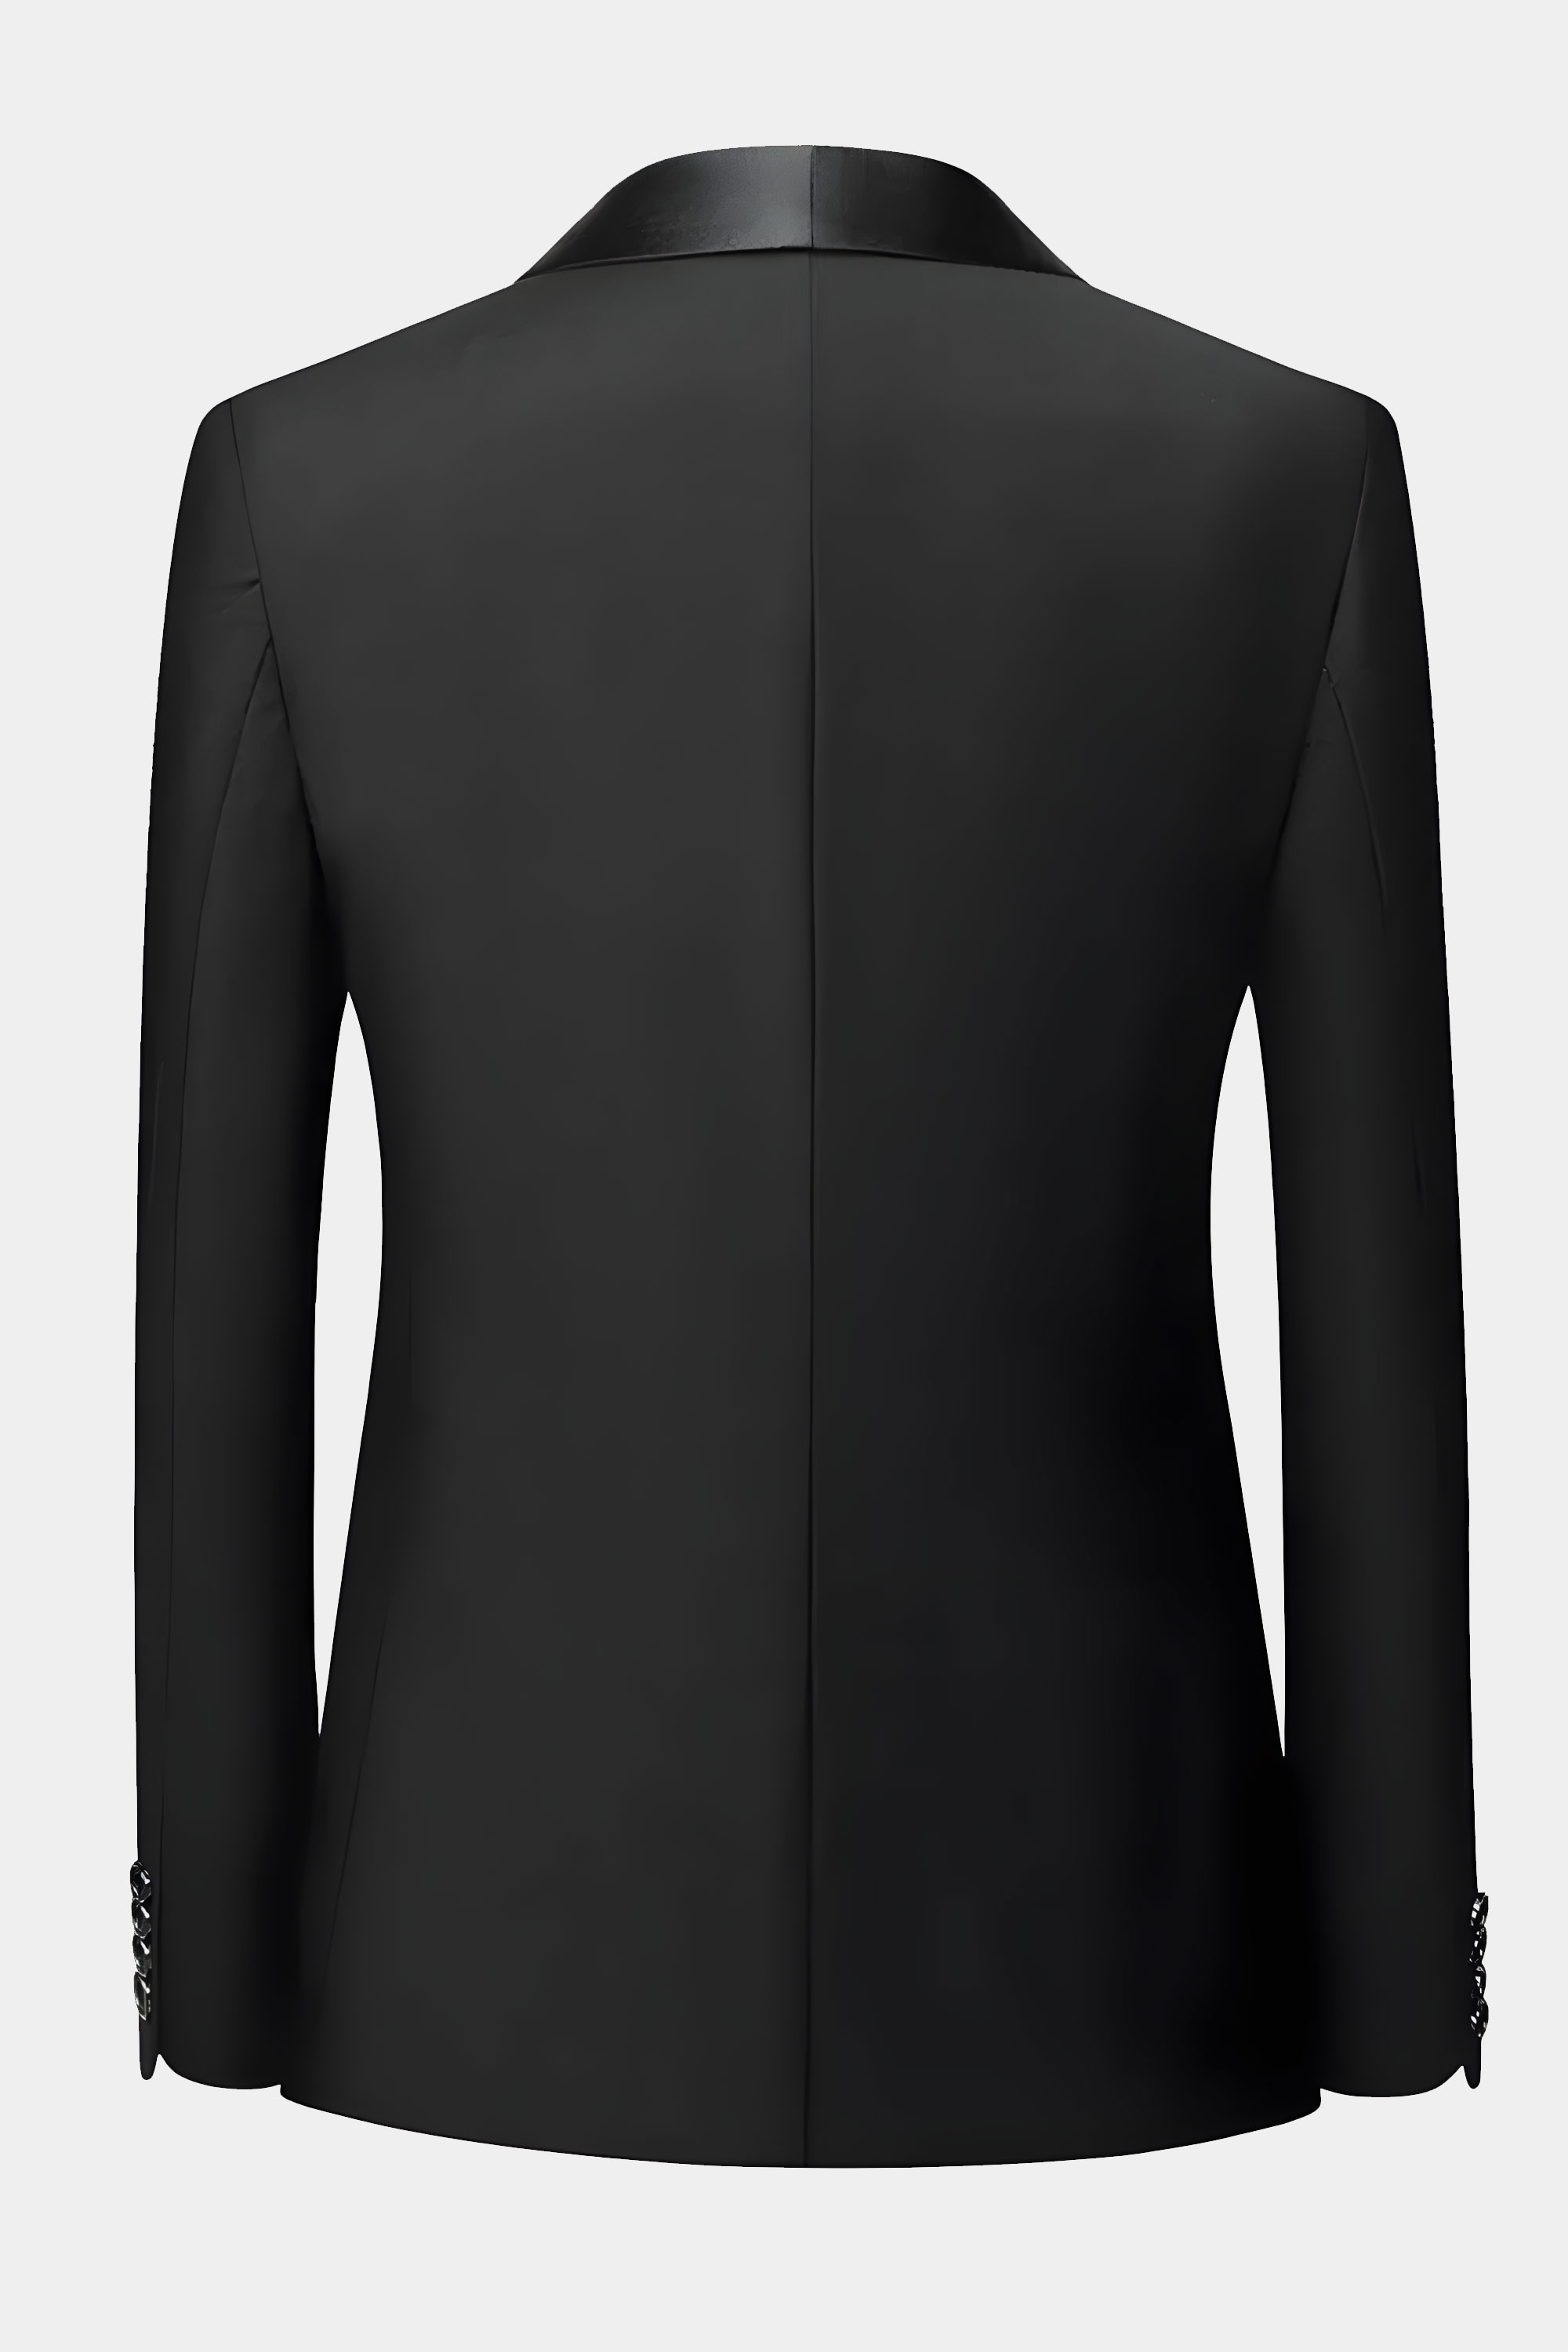 Black-Tuxedo-Jacket-from-Gentlemansguru.com